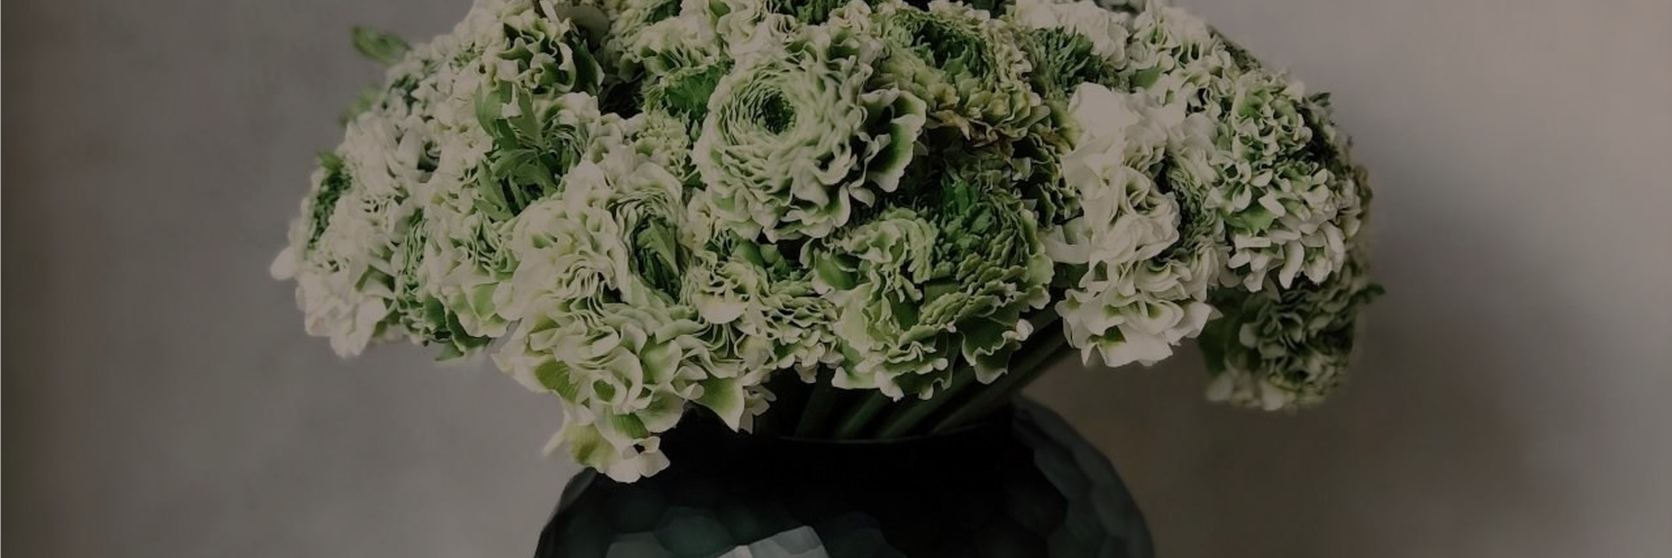 arrangement-green-vase-green-flowers